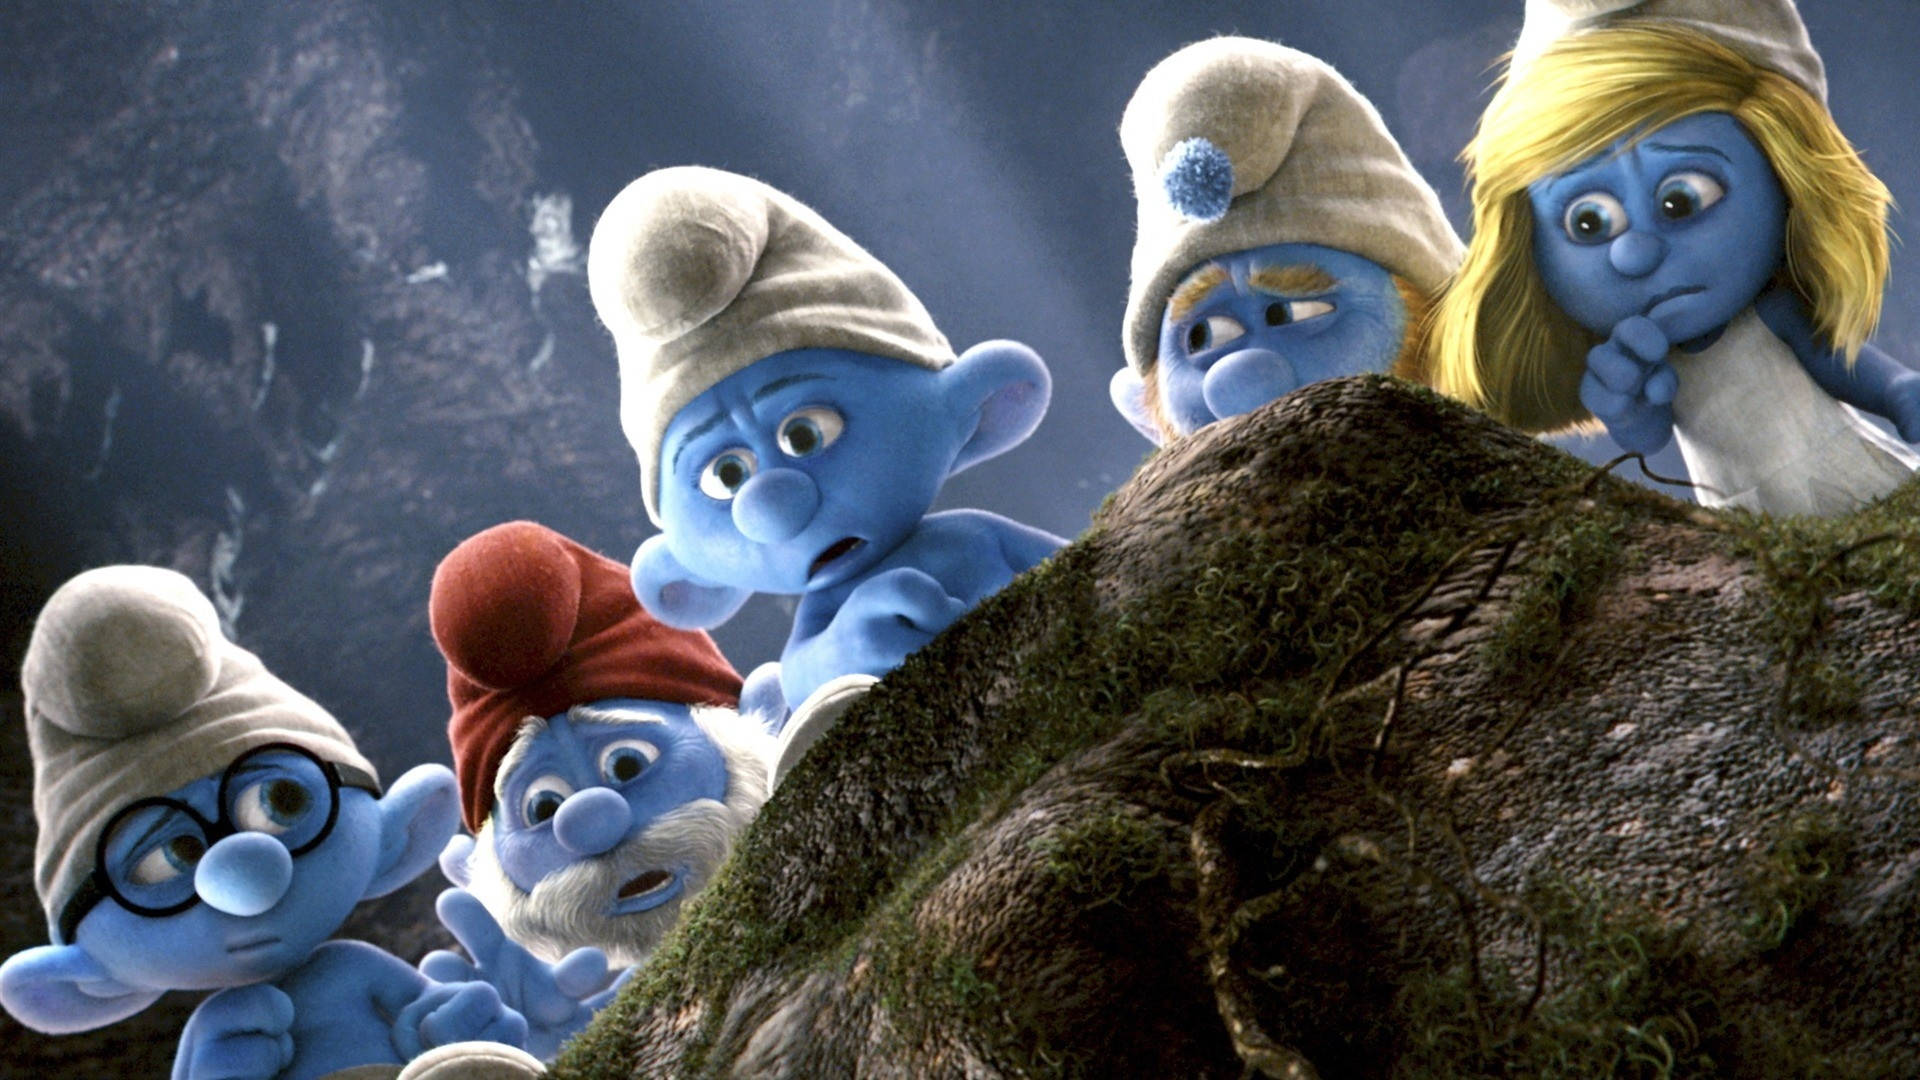 The Smurfs Movie Background